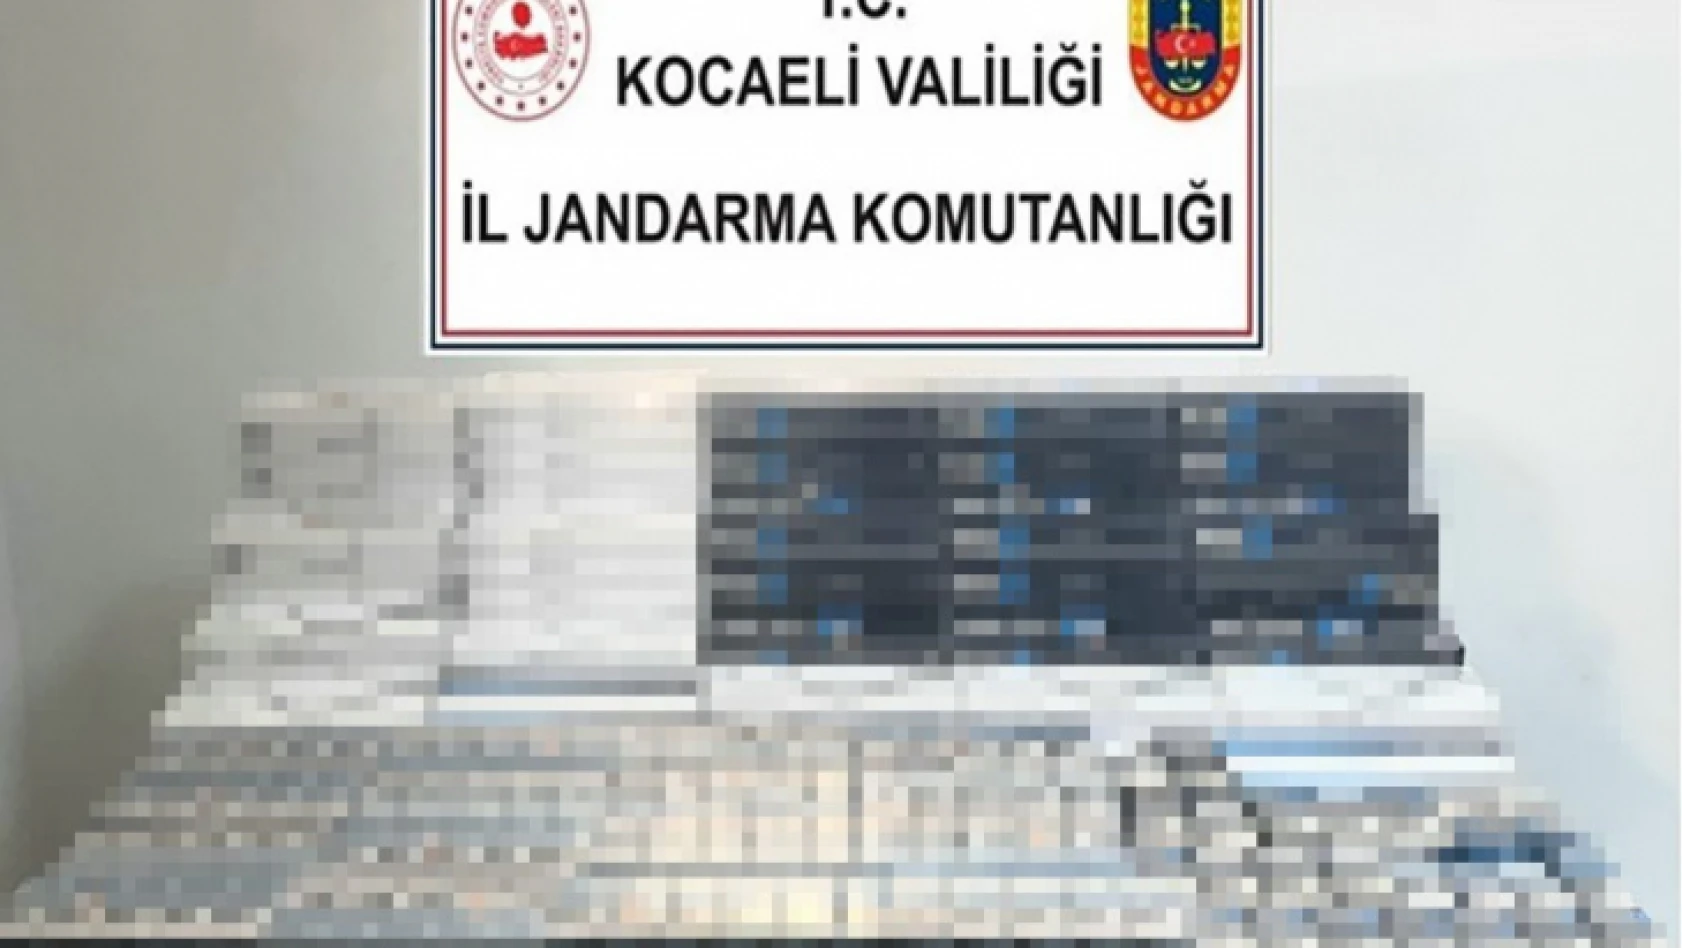 Kocaeli'de bin 280 paket kaçak sigara ele geçirildi